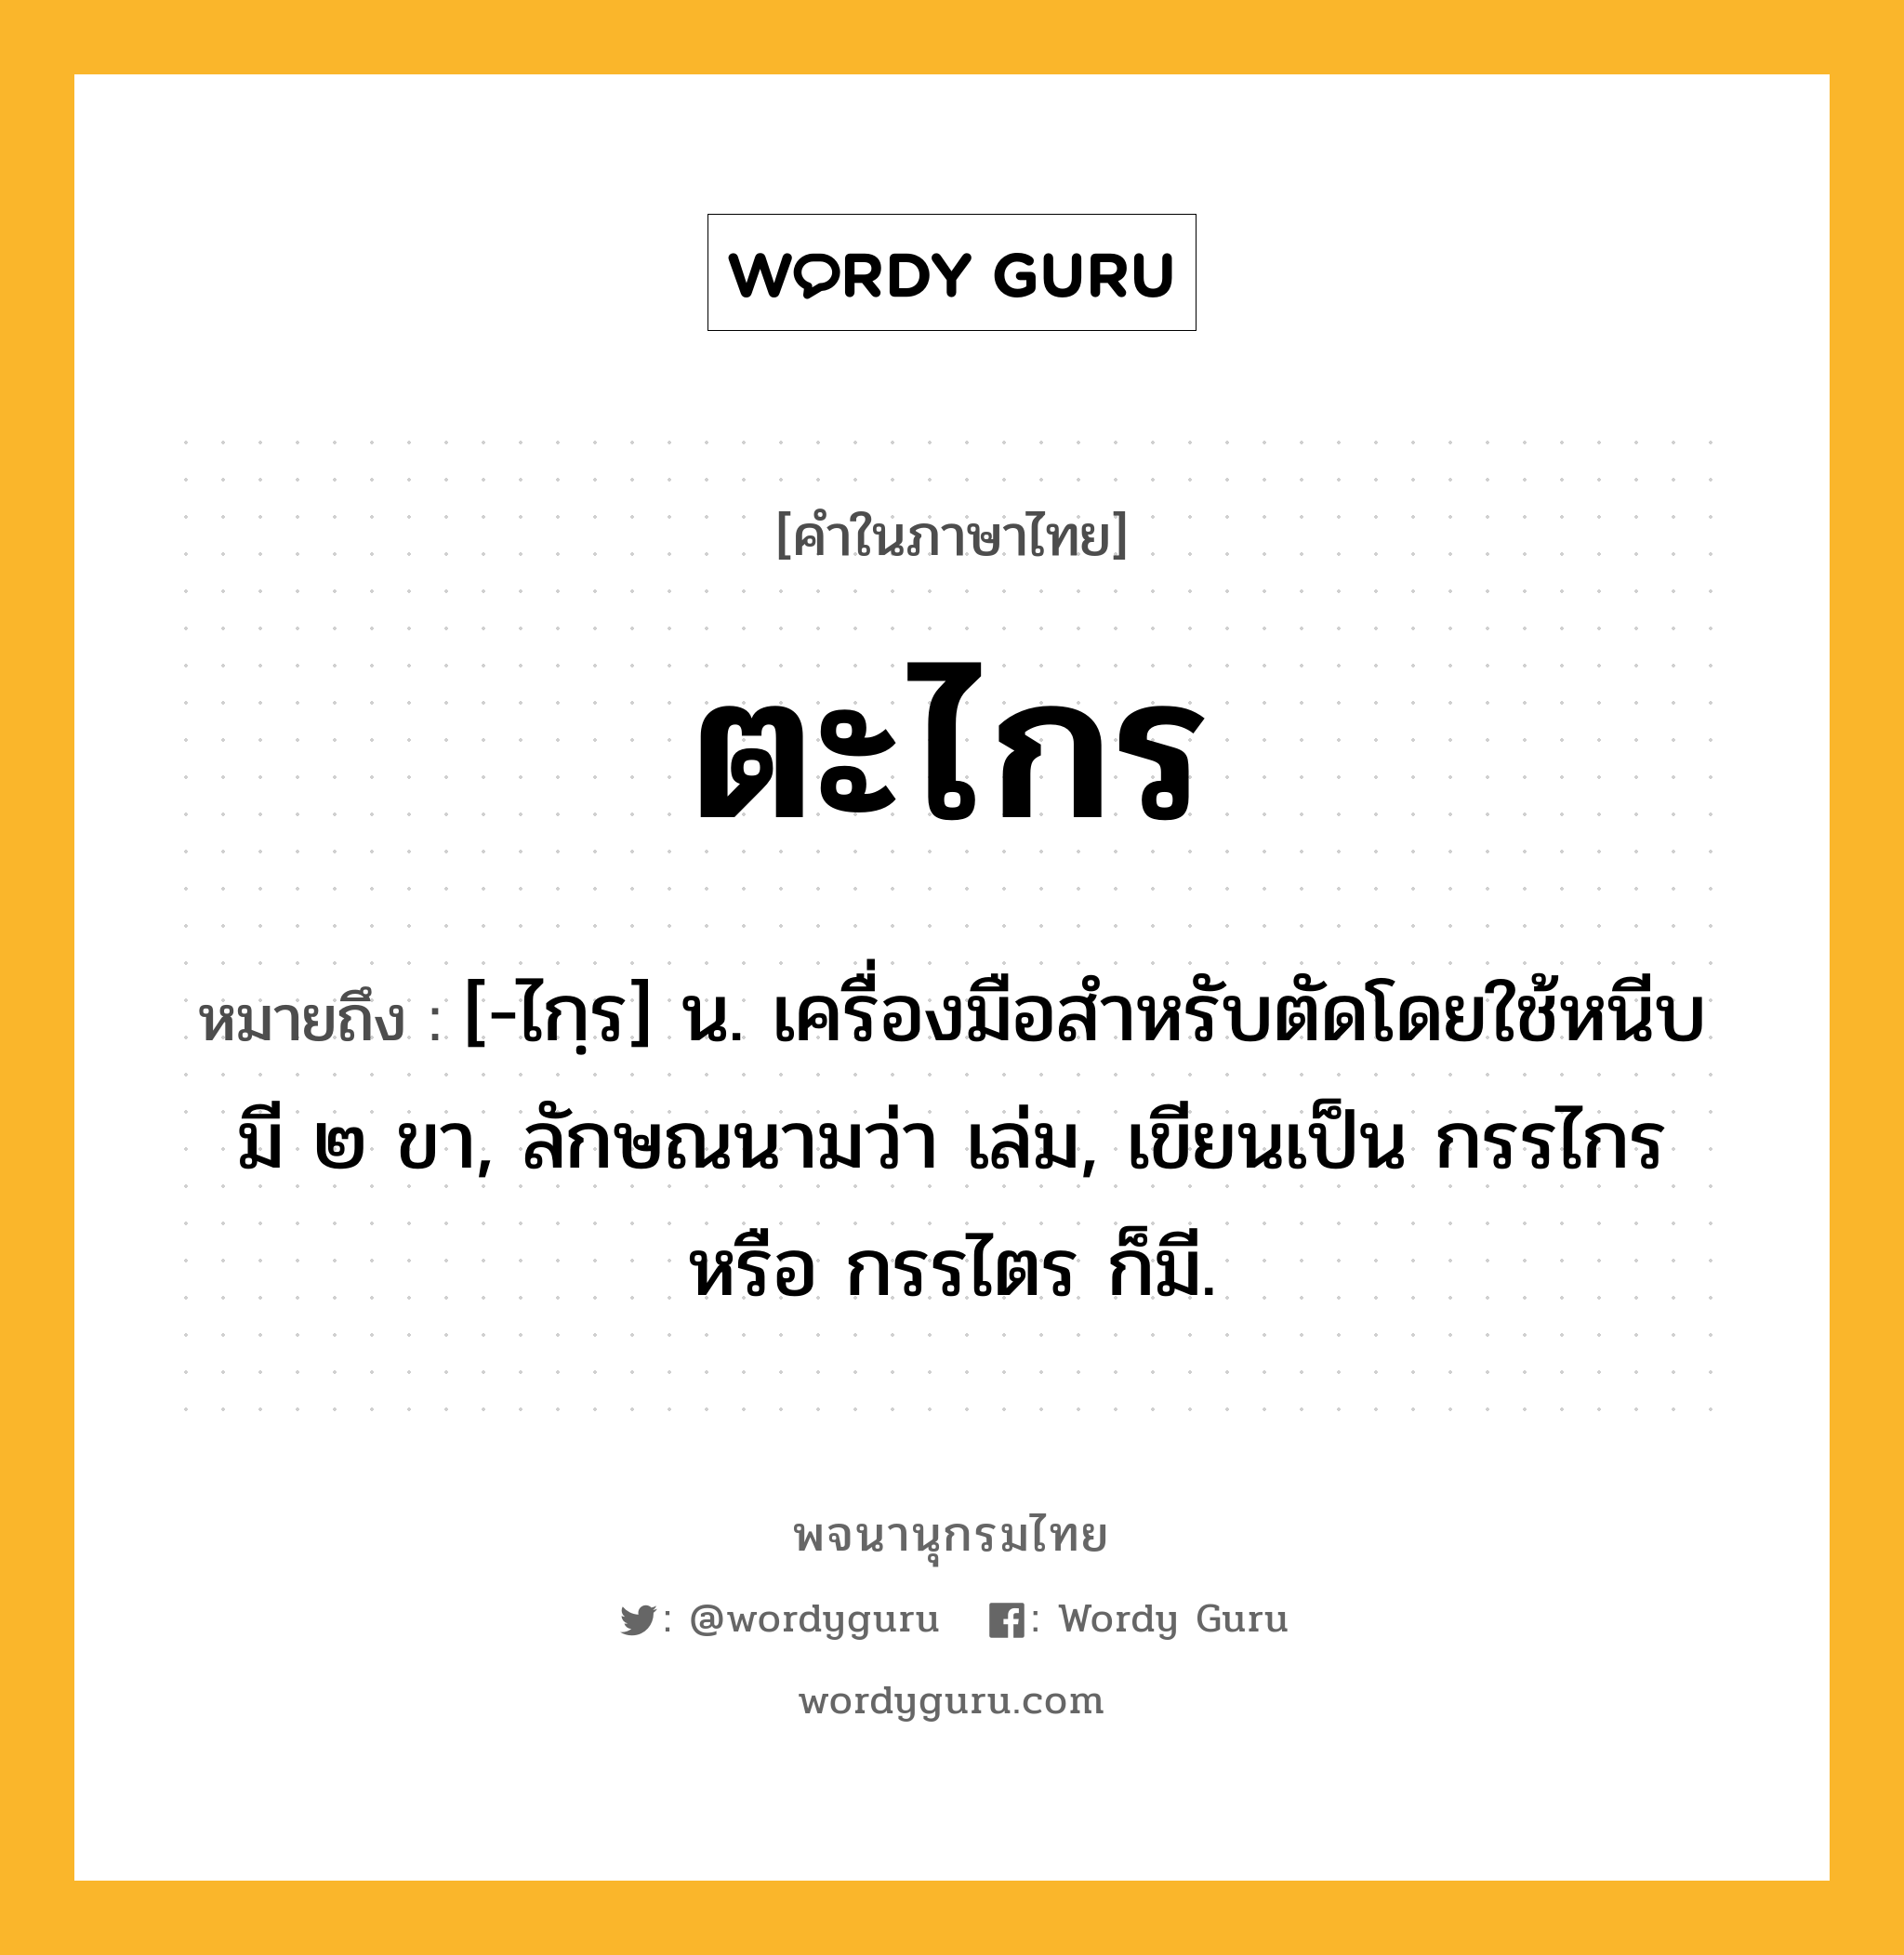 ตะไกร ความหมาย หมายถึงอะไร?, คำในภาษาไทย ตะไกร หมายถึง [-ไกฺร] น. เครื่องมือสําหรับตัดโดยใช้หนีบ มี ๒ ขา, ลักษณนามว่า เล่ม, เขียนเป็น กรรไกร หรือ กรรไตร ก็มี.